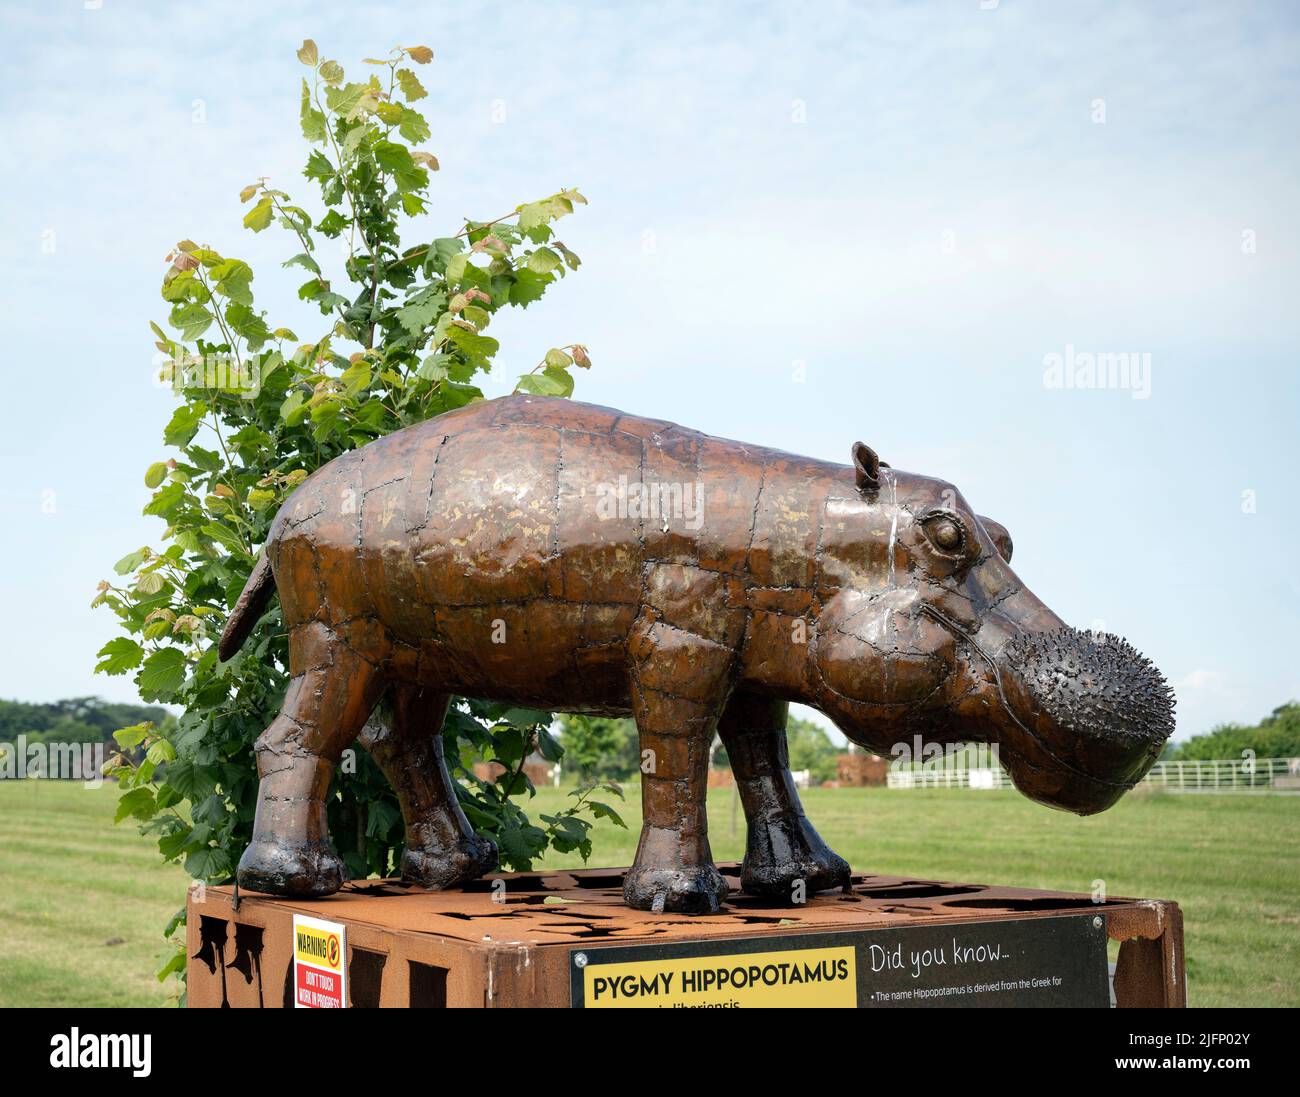 El Centro Británico de Hierro, Exposición/Escultura Pygmy Hippopotamus Foto de stock